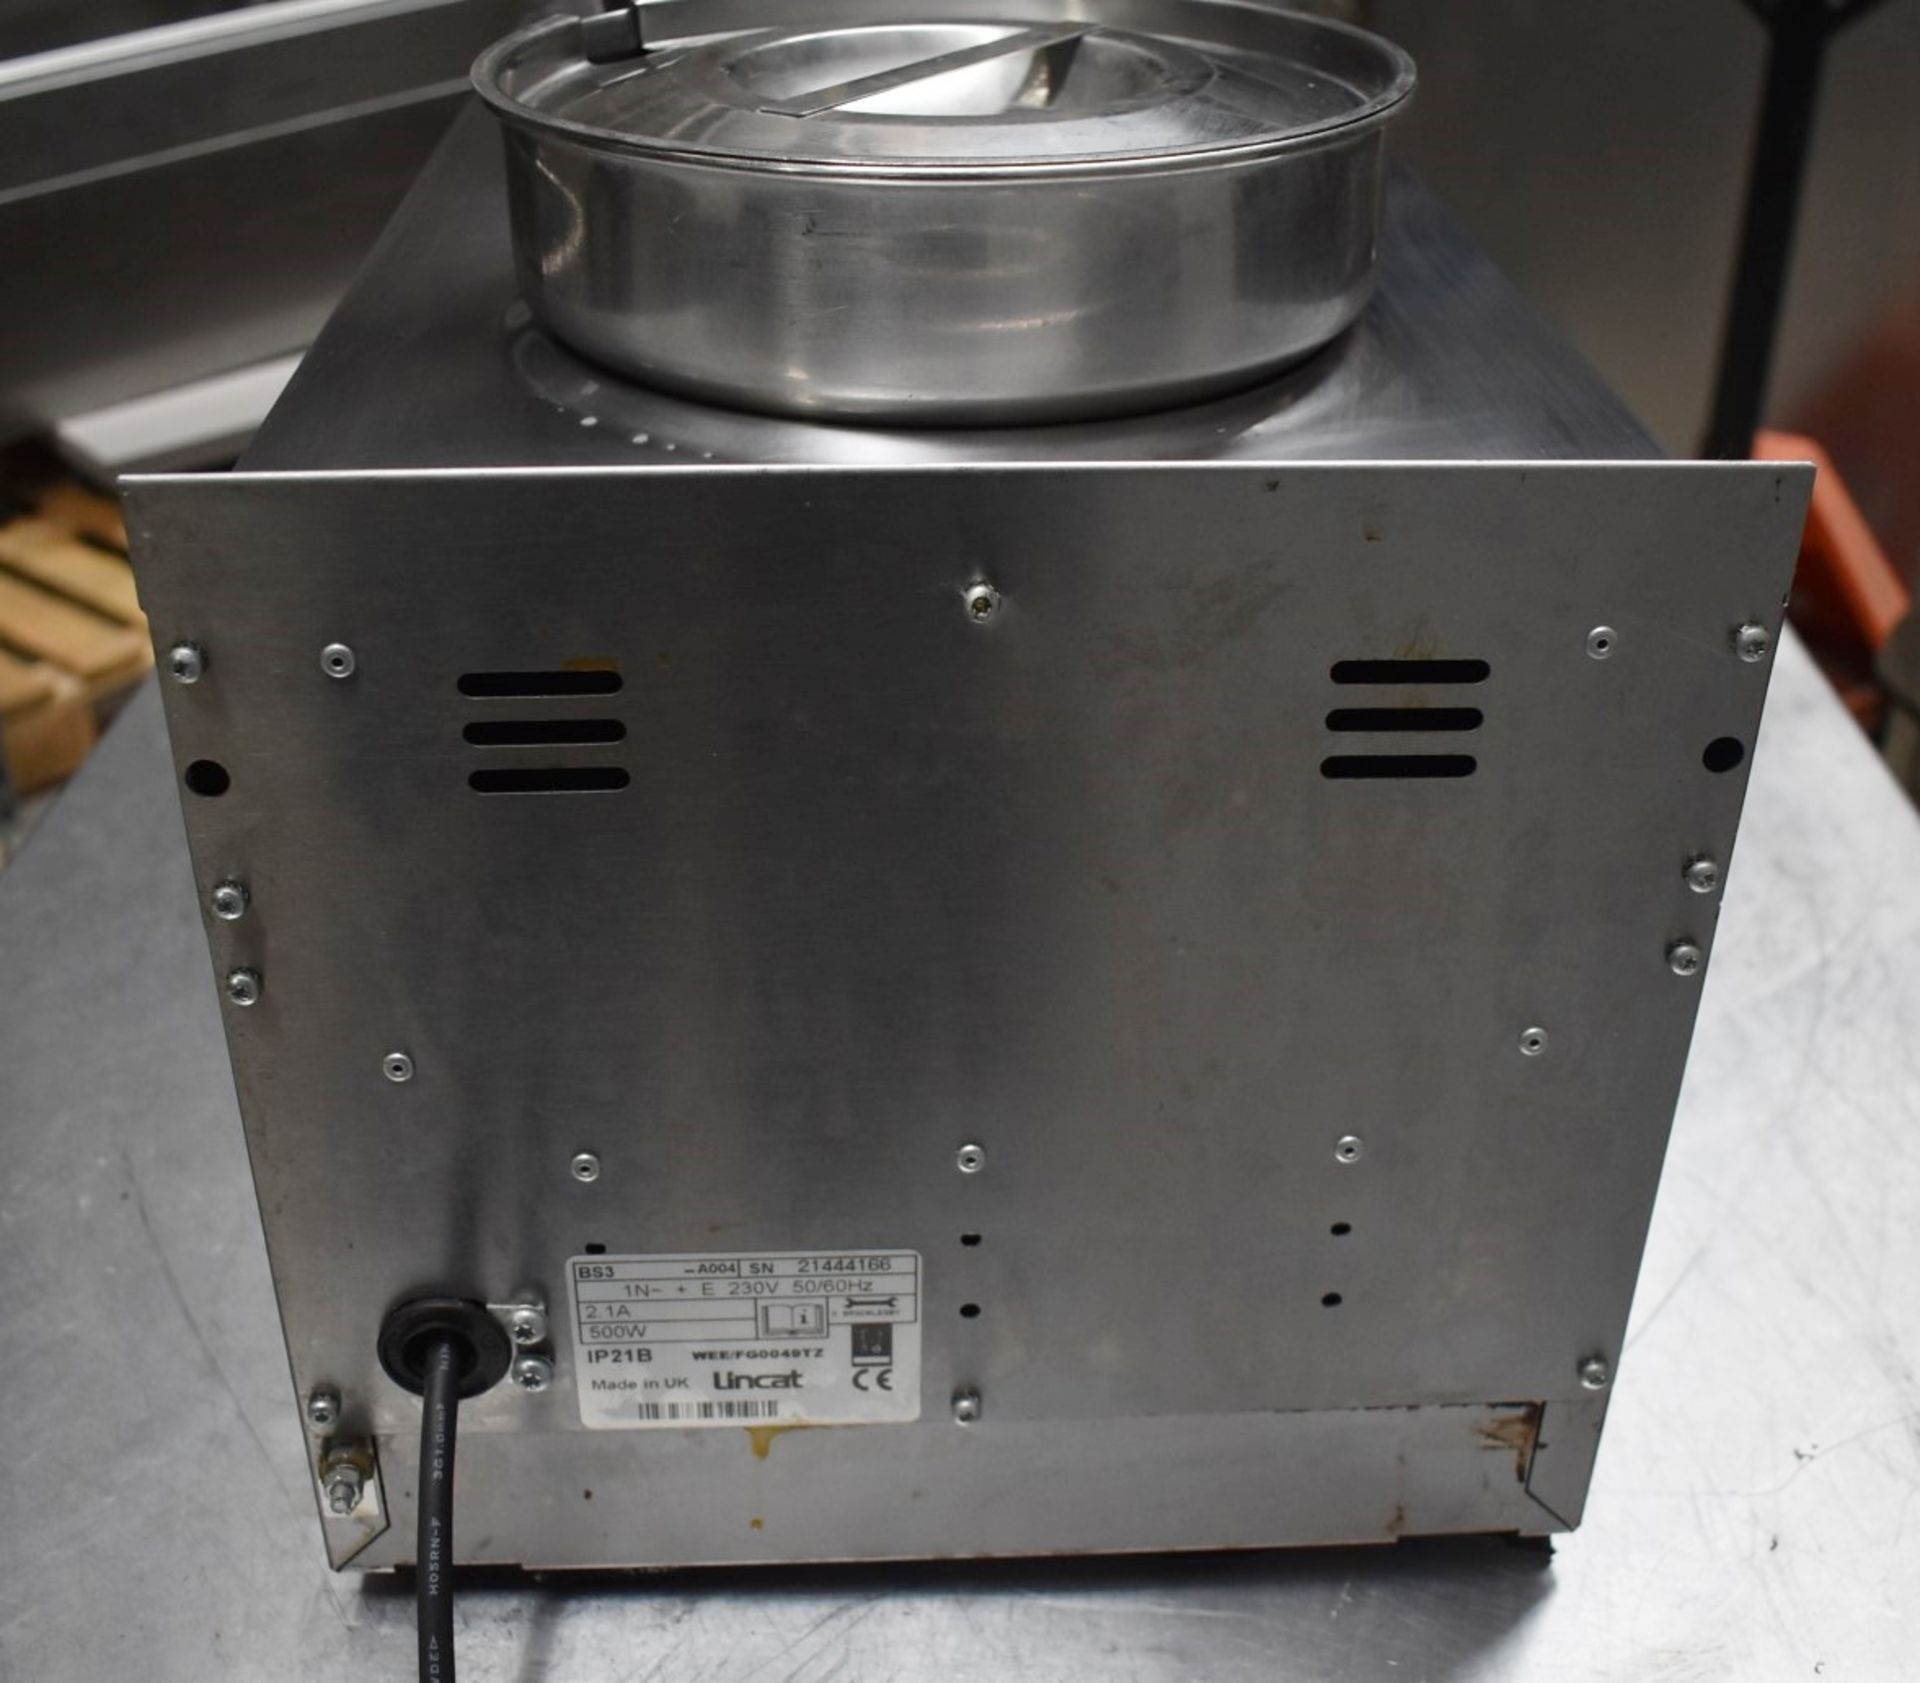 1 x Lincat Silverlink 600 Twin Pot Bain Marie - Model BS3 - 500W Dry Heat - 2x 4.5Ltr Pot With - Image 8 of 9